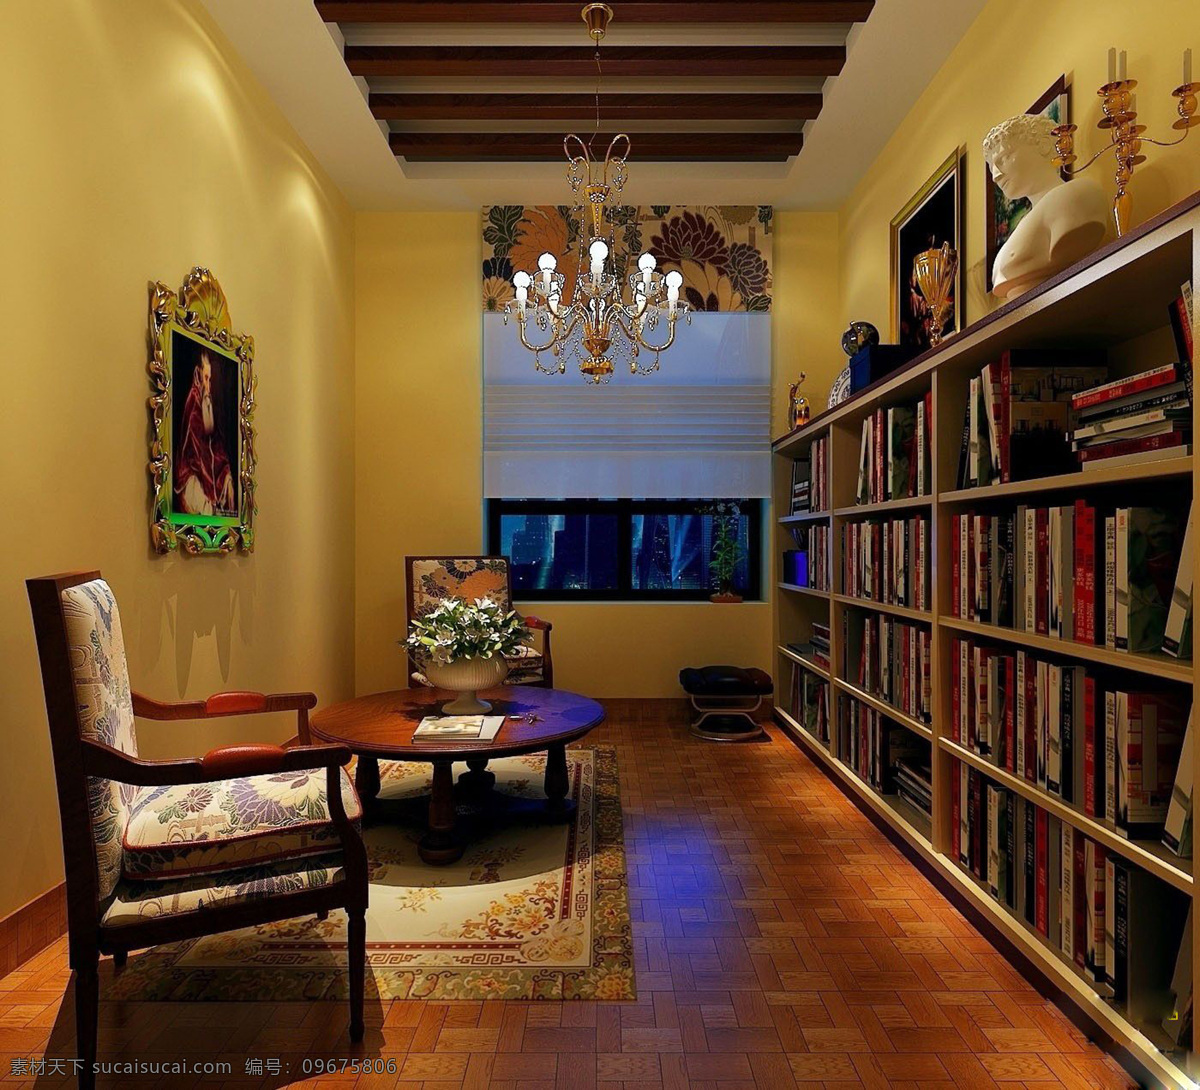 风情 书房 书柜 西班牙 效果图 家居装饰素材 室内设计